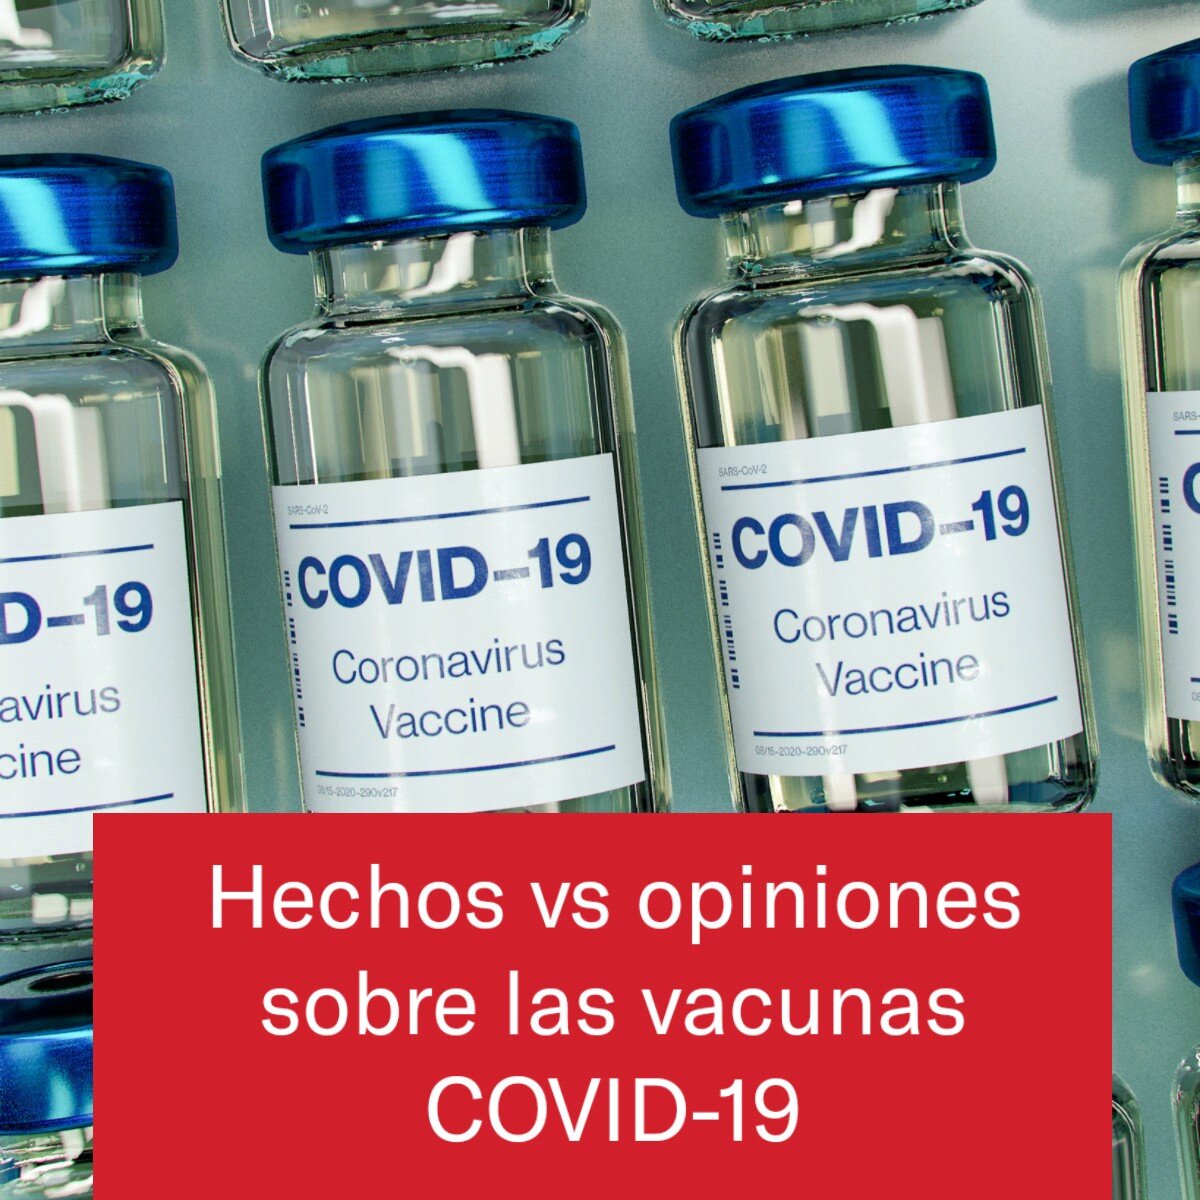 Hechos y opiniones sobre las vacunas COVID-19